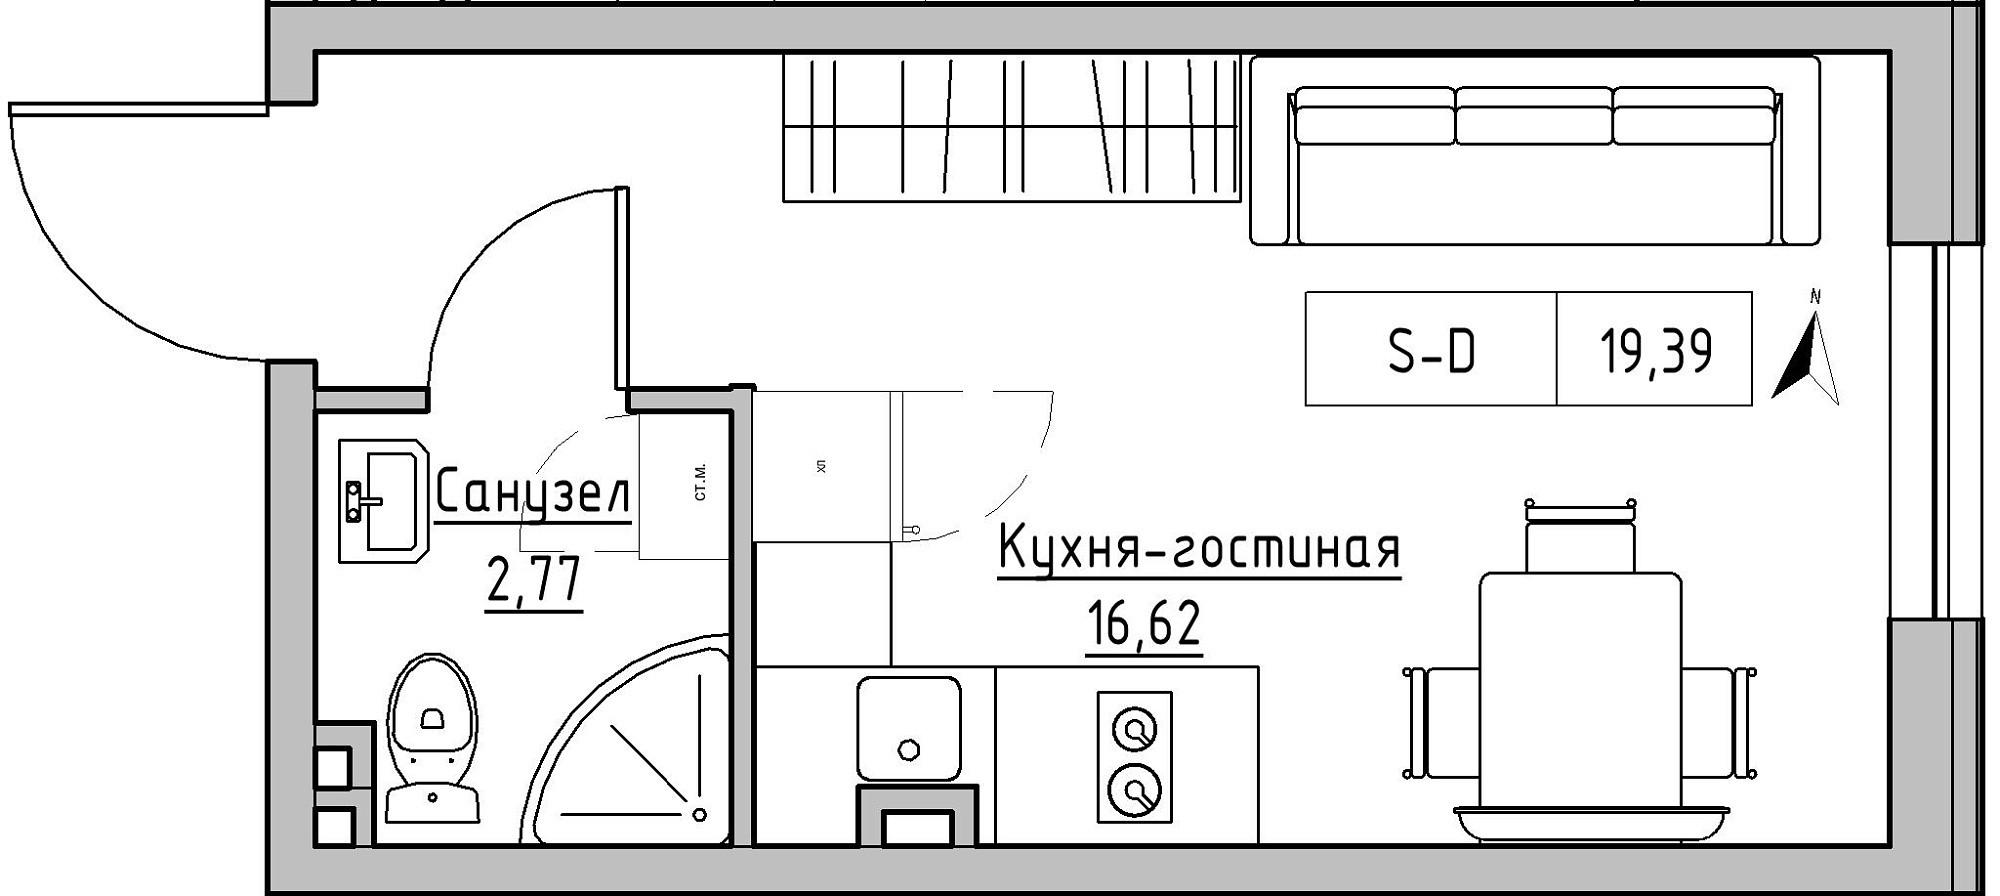 Планування Smart-квартира площею 19.39м2, KS-024-01/0014.